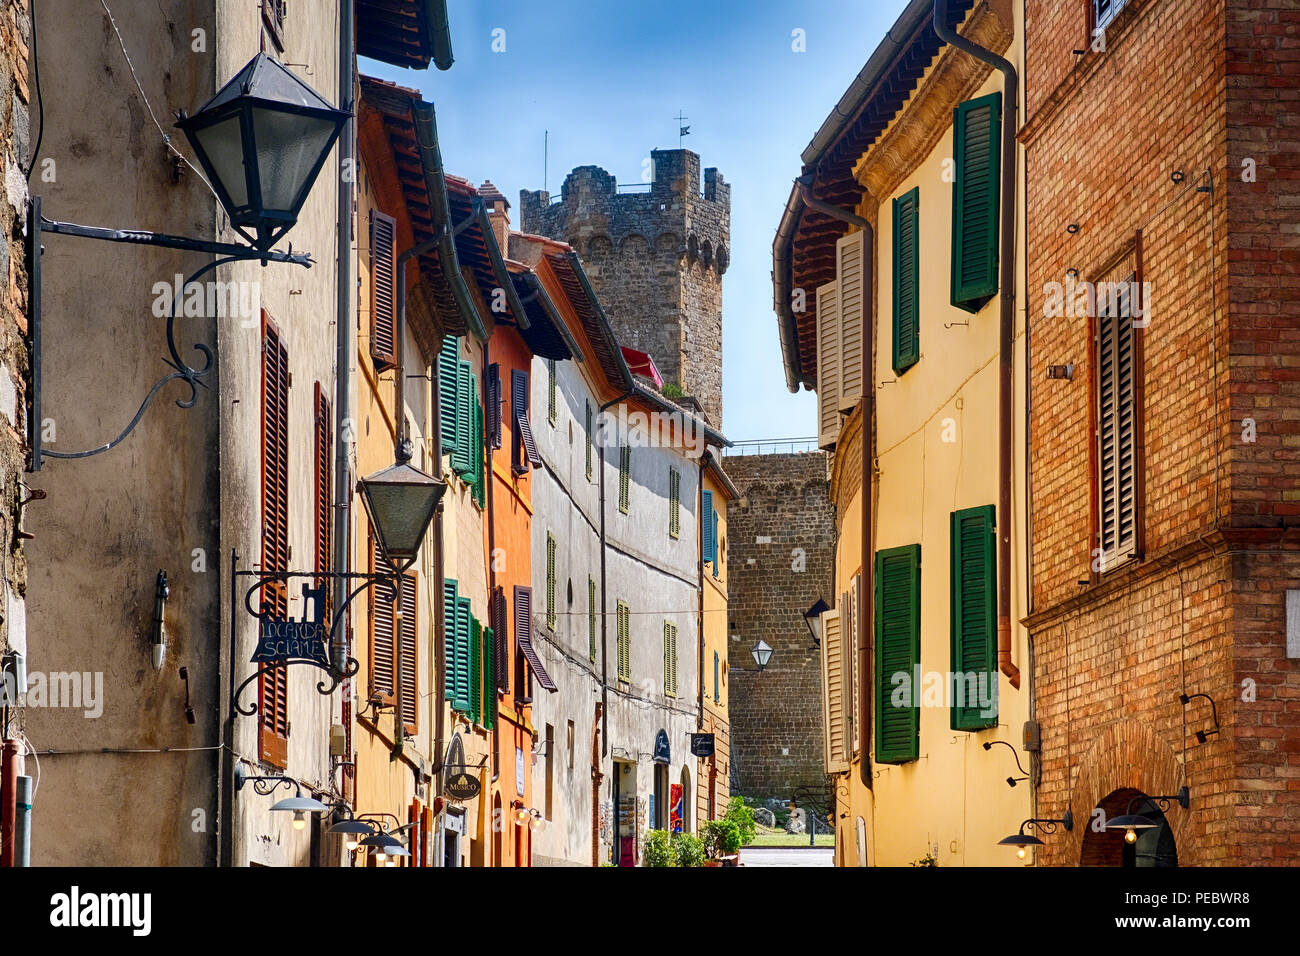 Street à Montalcino avec la tour du château, Toscane Italie Banque D'Images